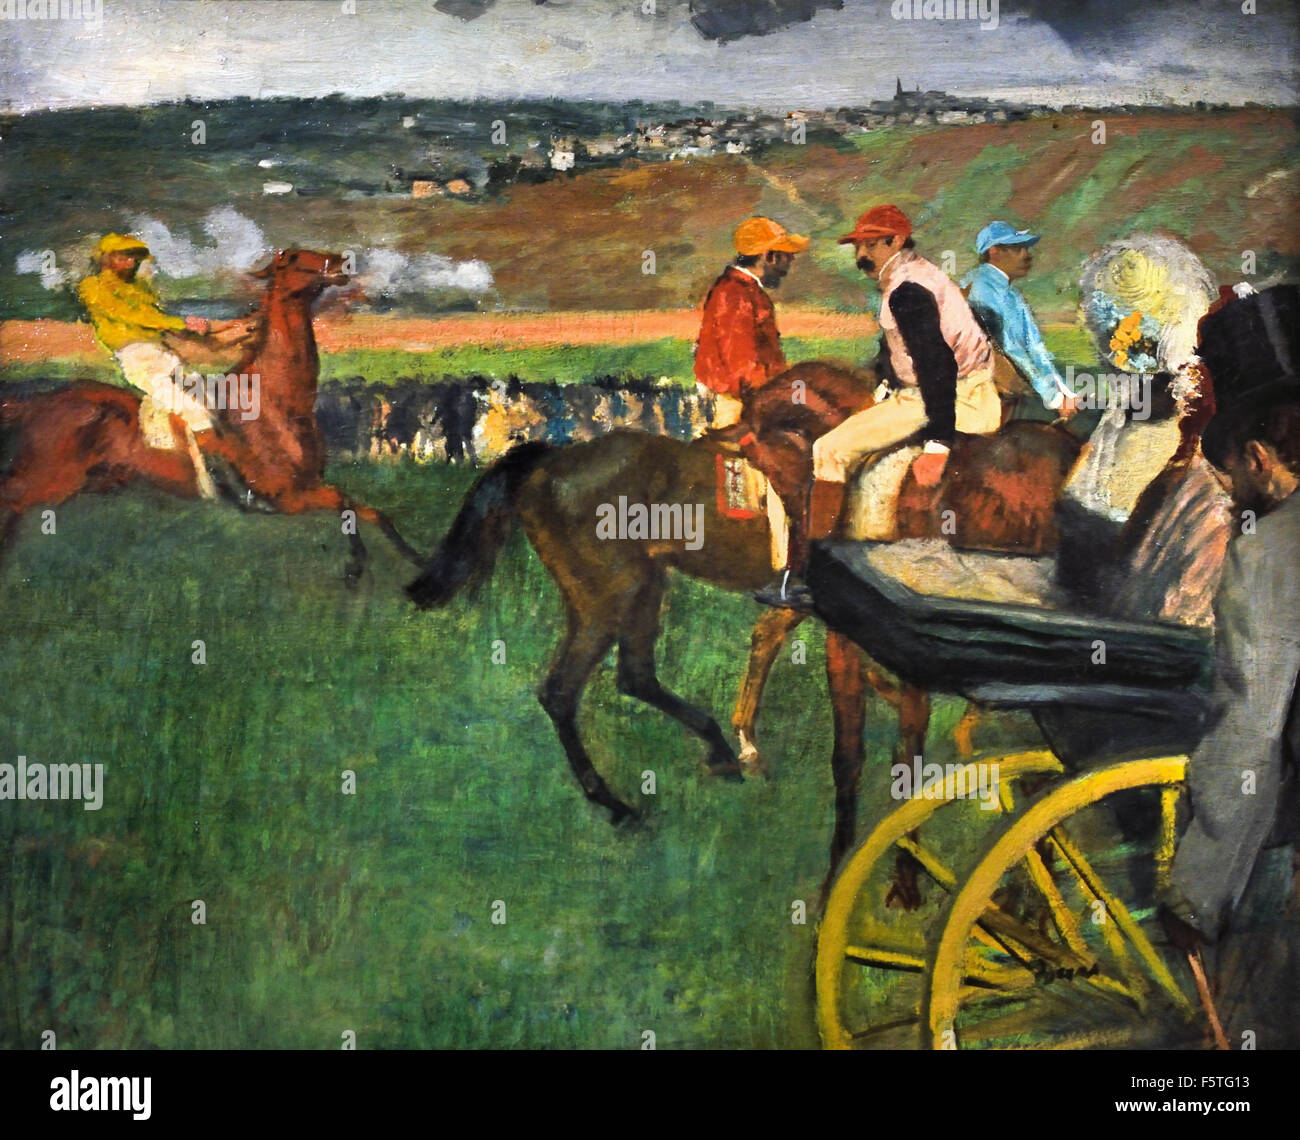 The Racetrack Jockeys near a Carriage 1887 Edgar Degas 1834-1917 France French Stock Photo